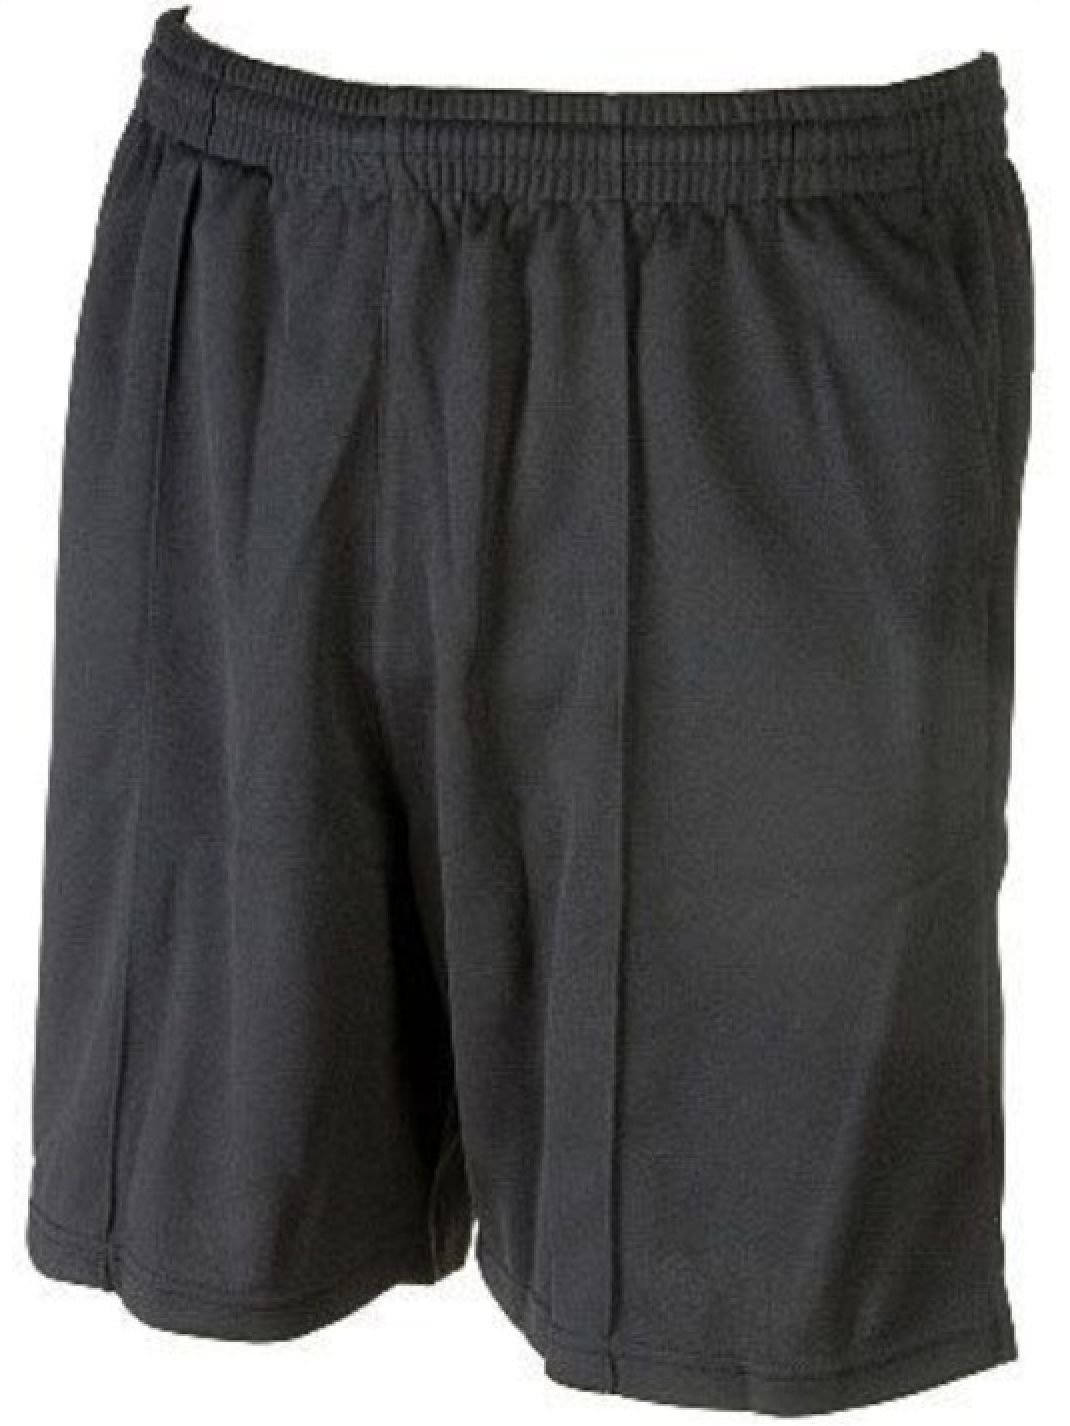 Smitty | SOC-100 | Black Soccer Shorts | 100% Polyester